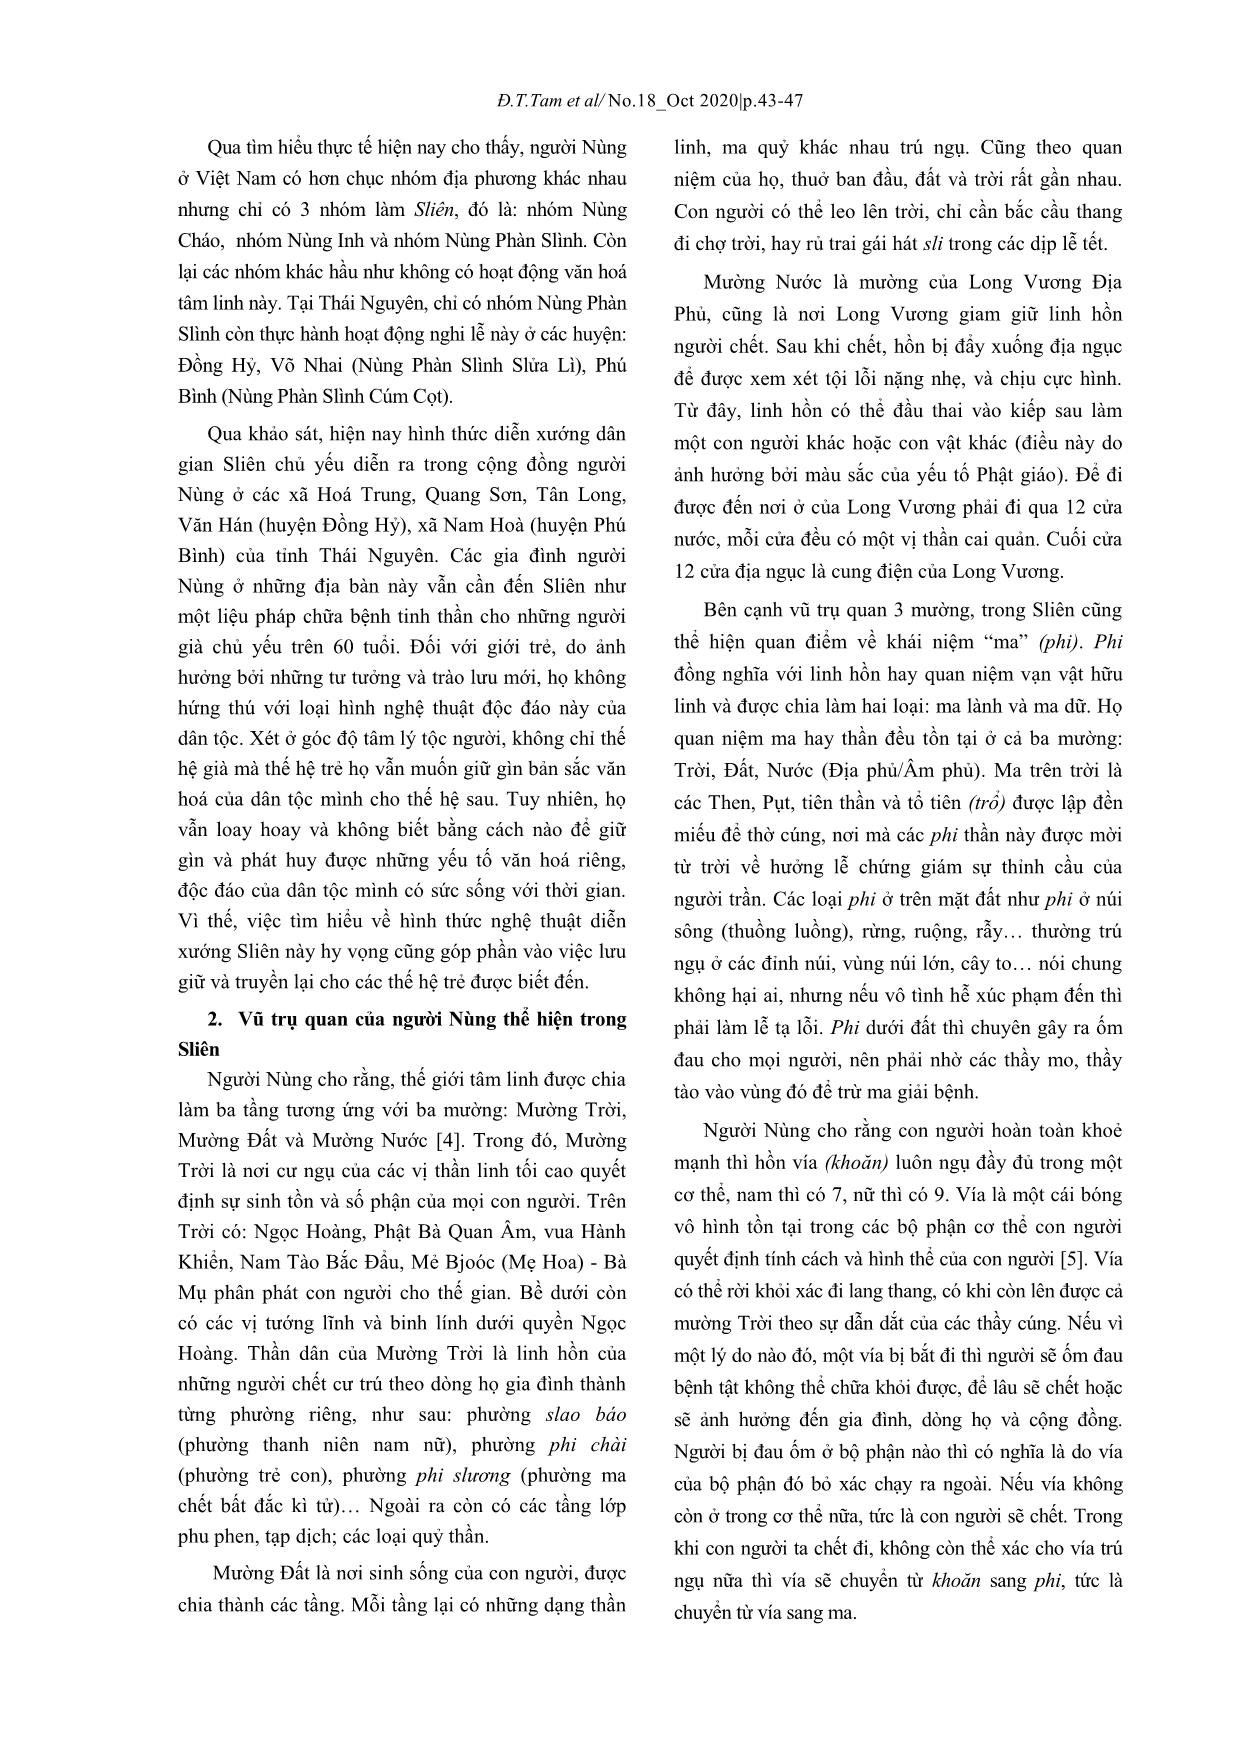 Nghi lễ Sliên của người Nùng ở Thái Nguyên trang 2